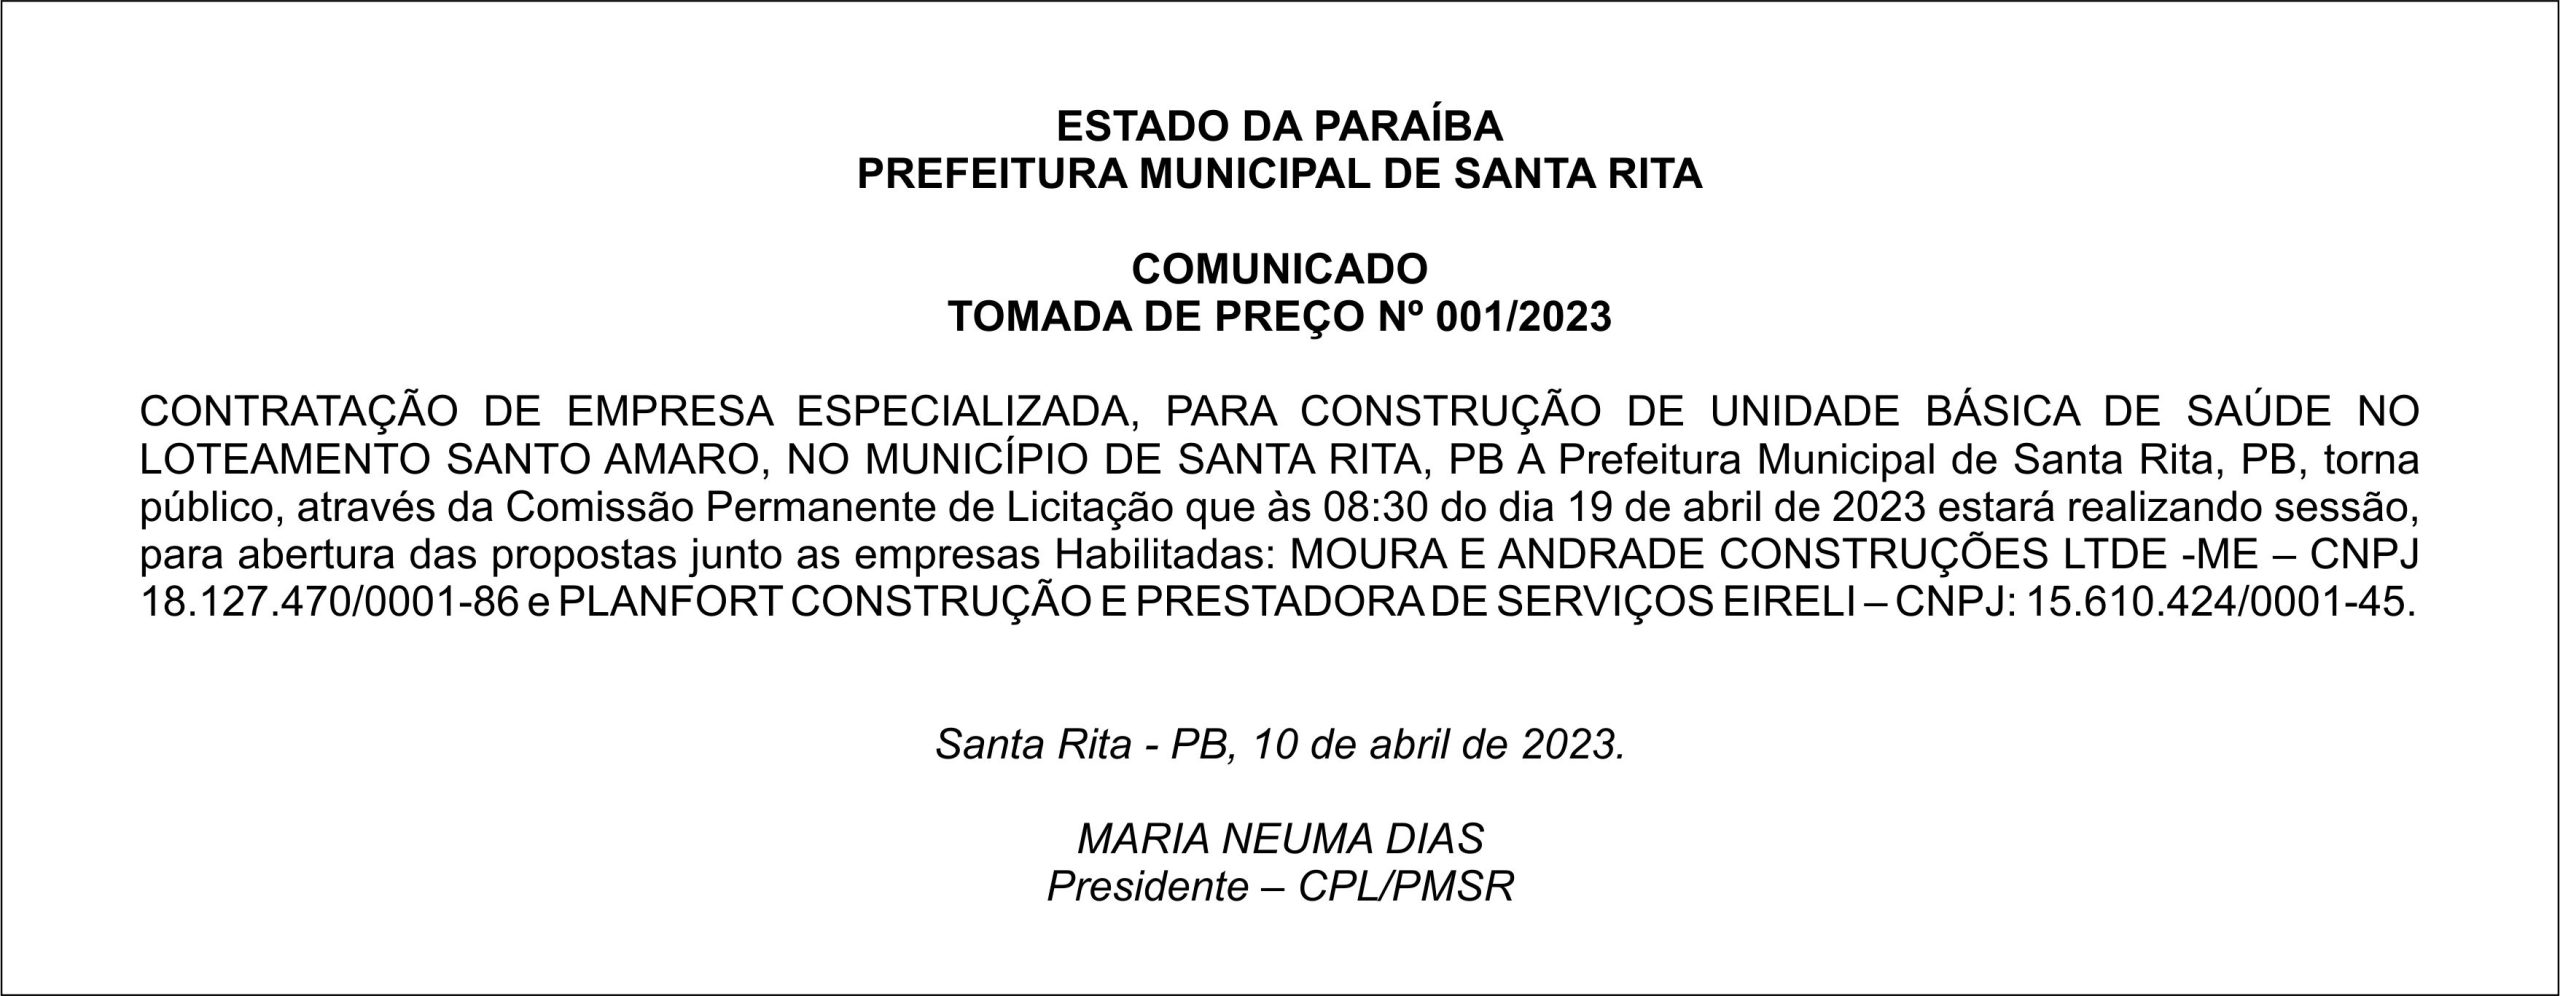 PREFEITURA MUNICIPAL DE SANTA RITA – COMUNICADO – TOMADA DE PREÇO Nº 001/2023